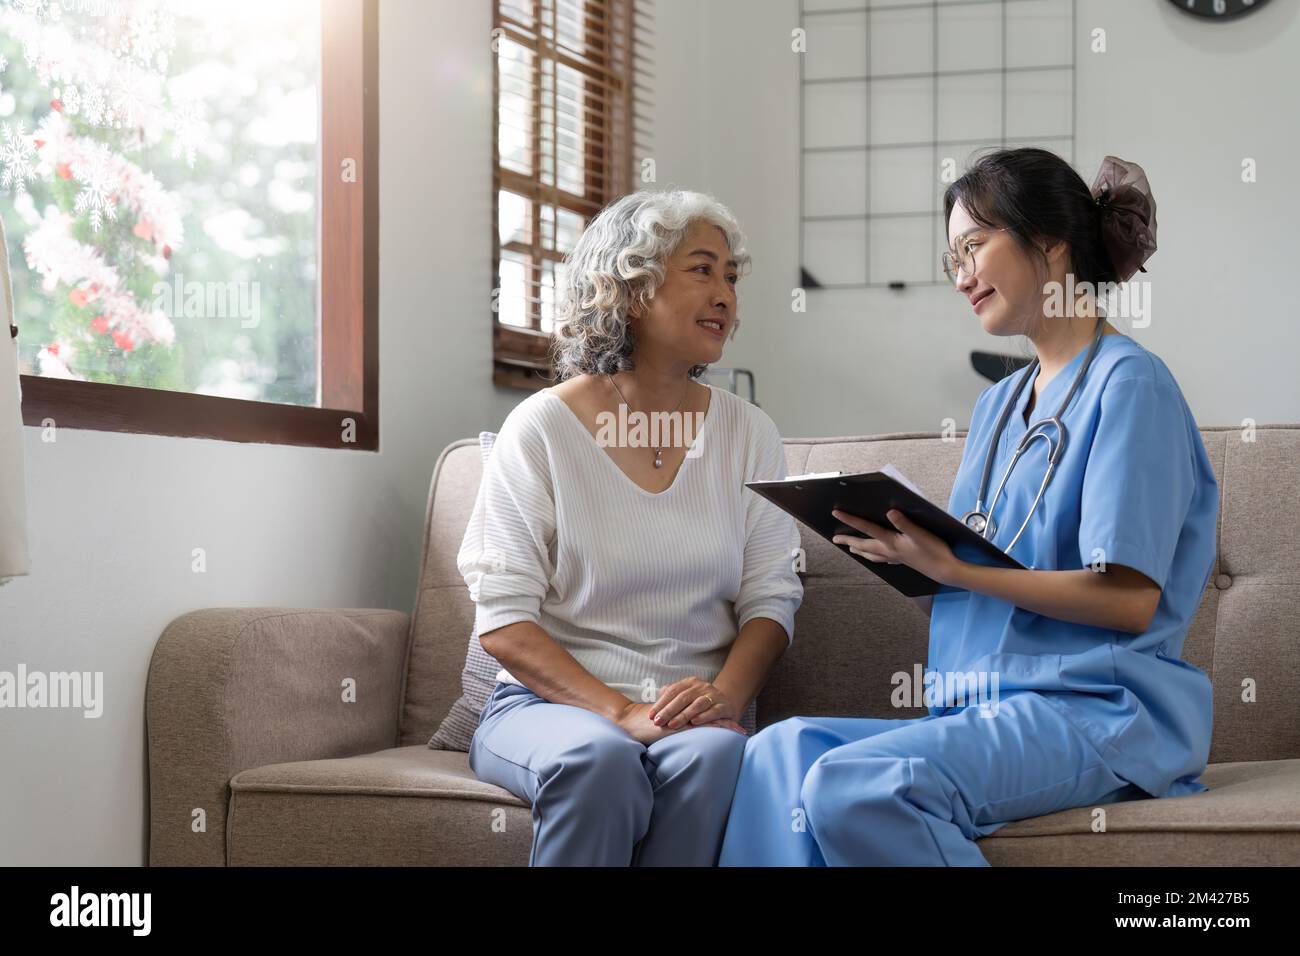 Asiatische Seniorin Patientin auf Sofa mit Ärztin Frau trägt Stethoskop-Diagnose Stockfoto